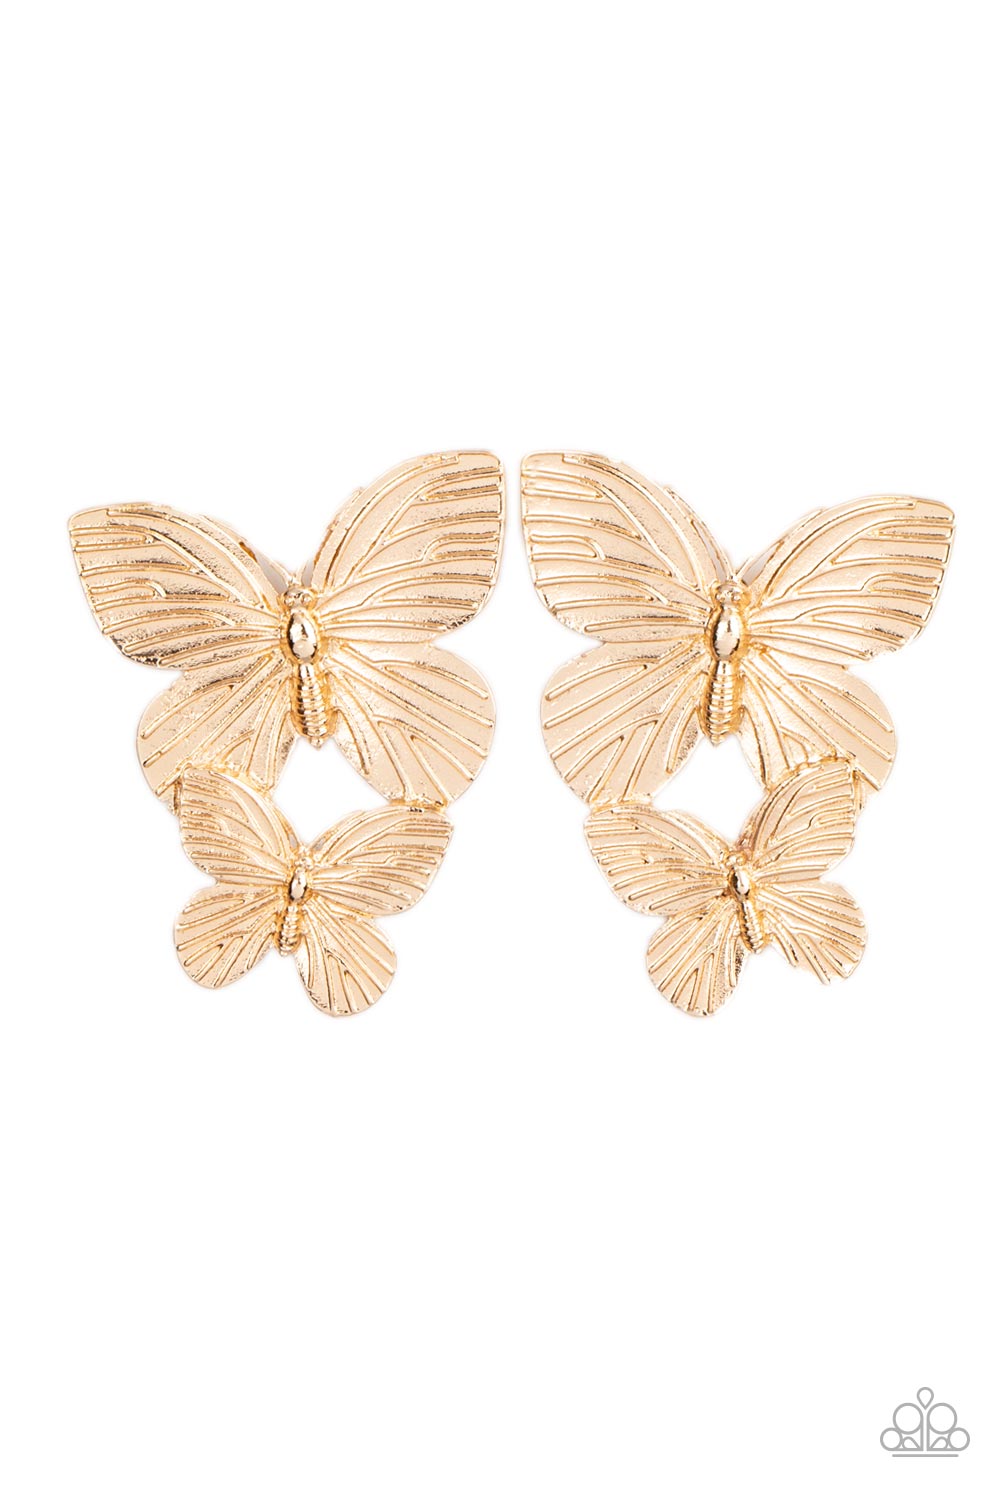 Blushing Butterflies Earring (Gold, Silver, Brass)